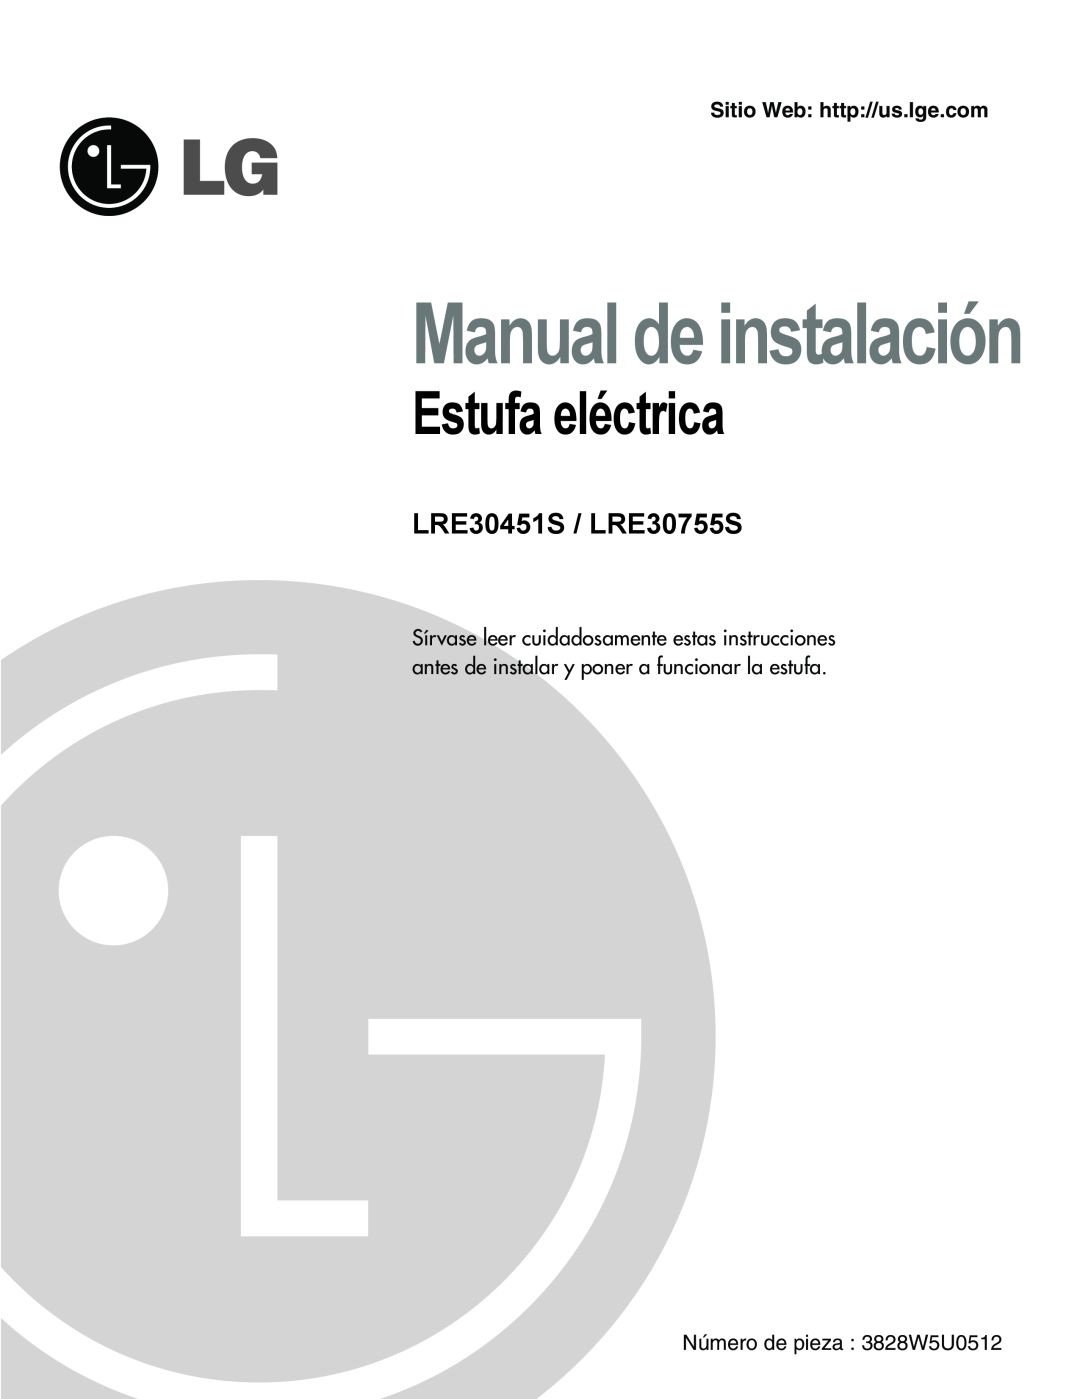 LG Electronics Estufa eléctrica, Número de pieza 3828W5U0512, Manual de instalación, LRE30451S / LRE30755S 